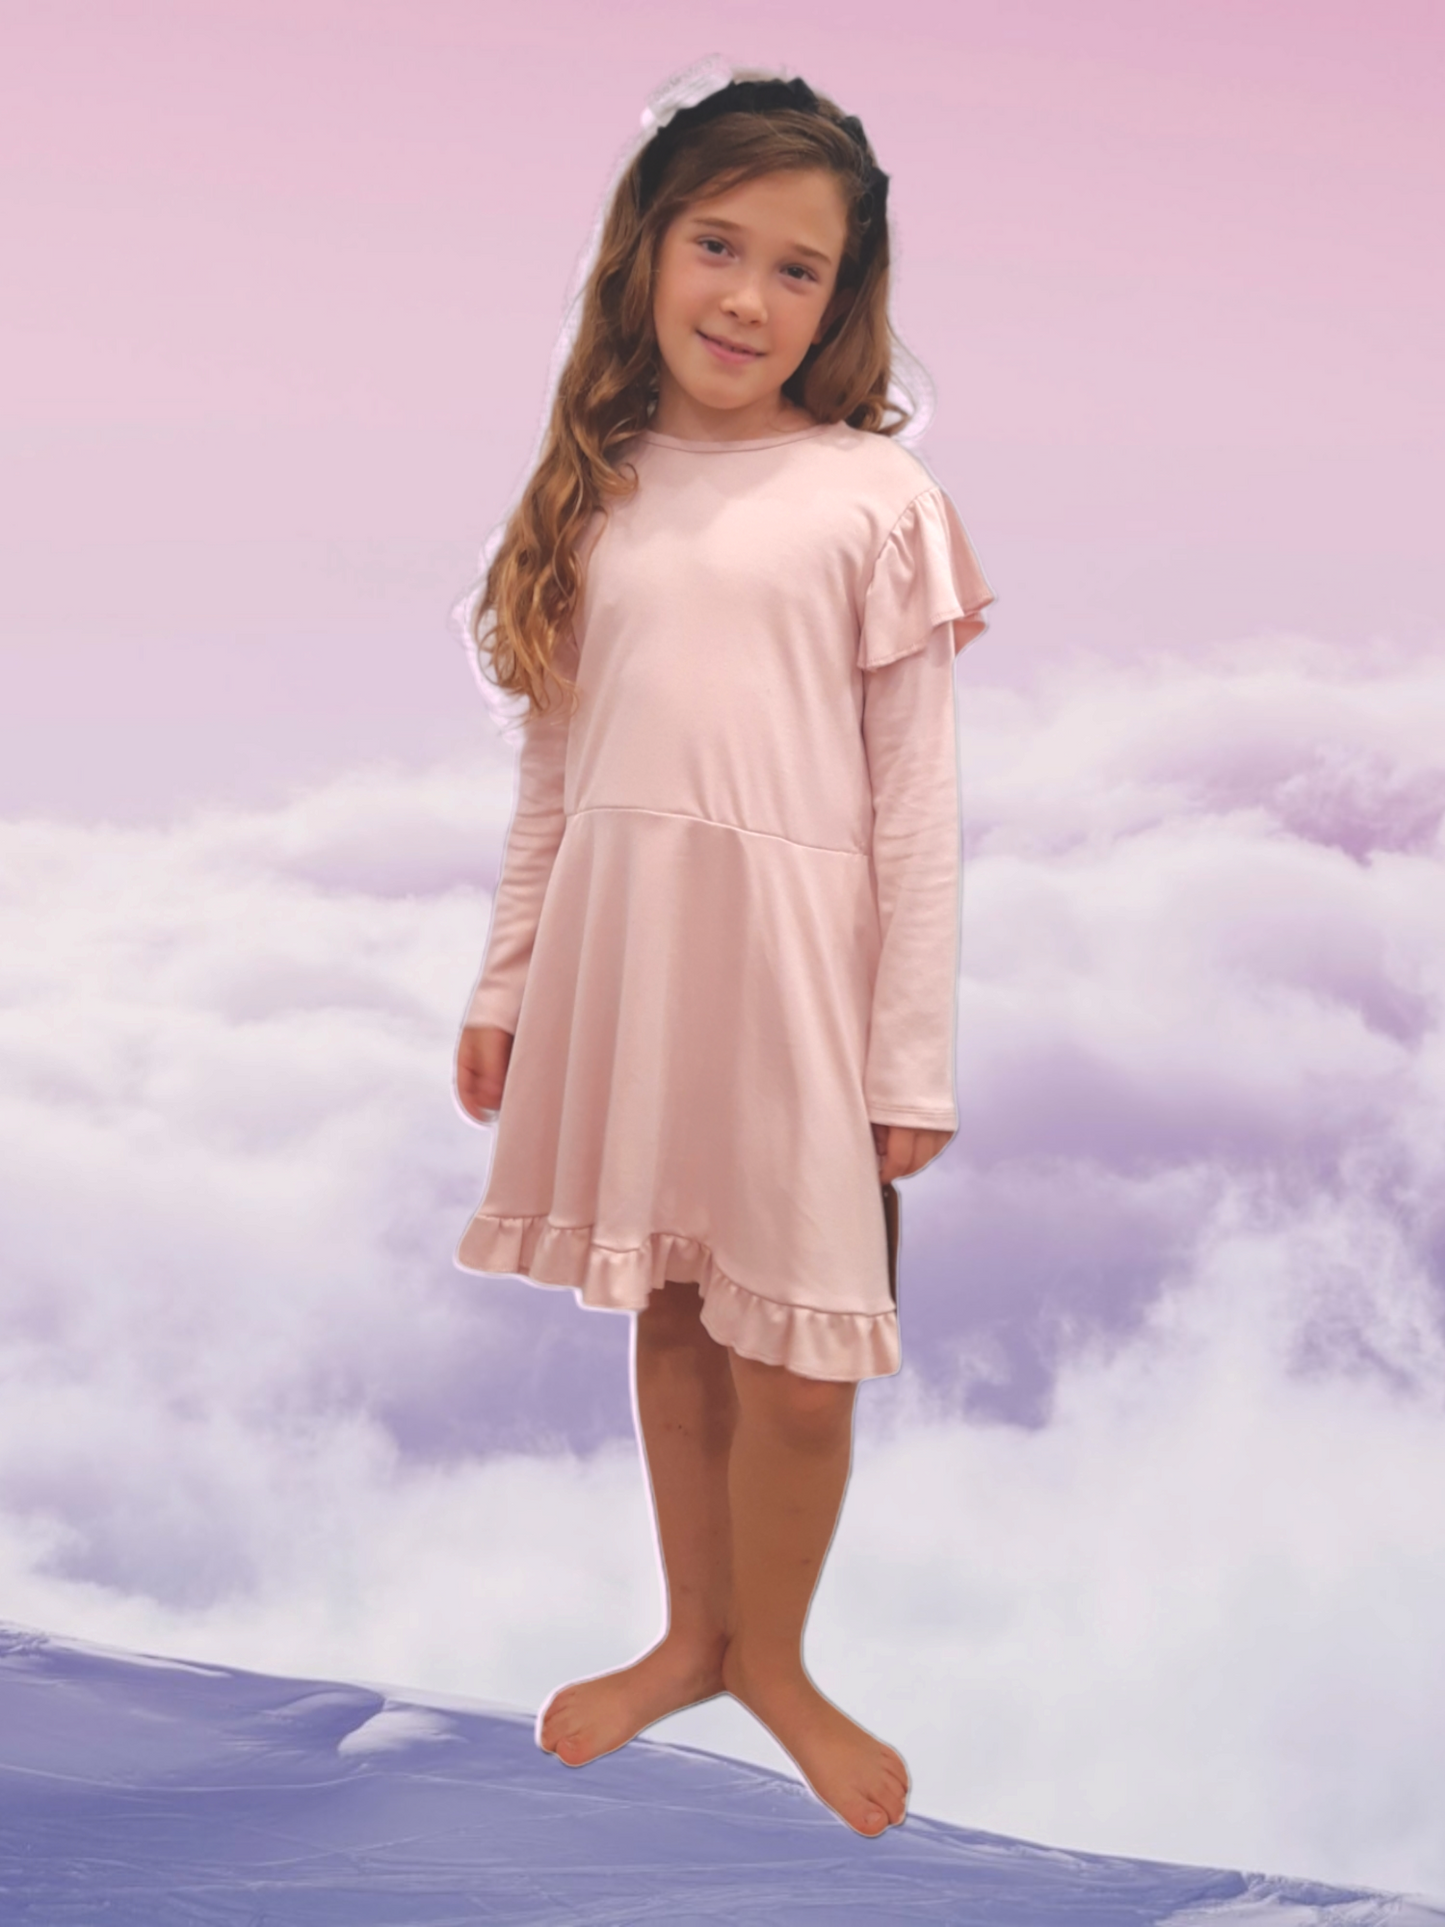 Vestido infantil rosa/ Diseño sostenible y ecológico/ Moda infantil